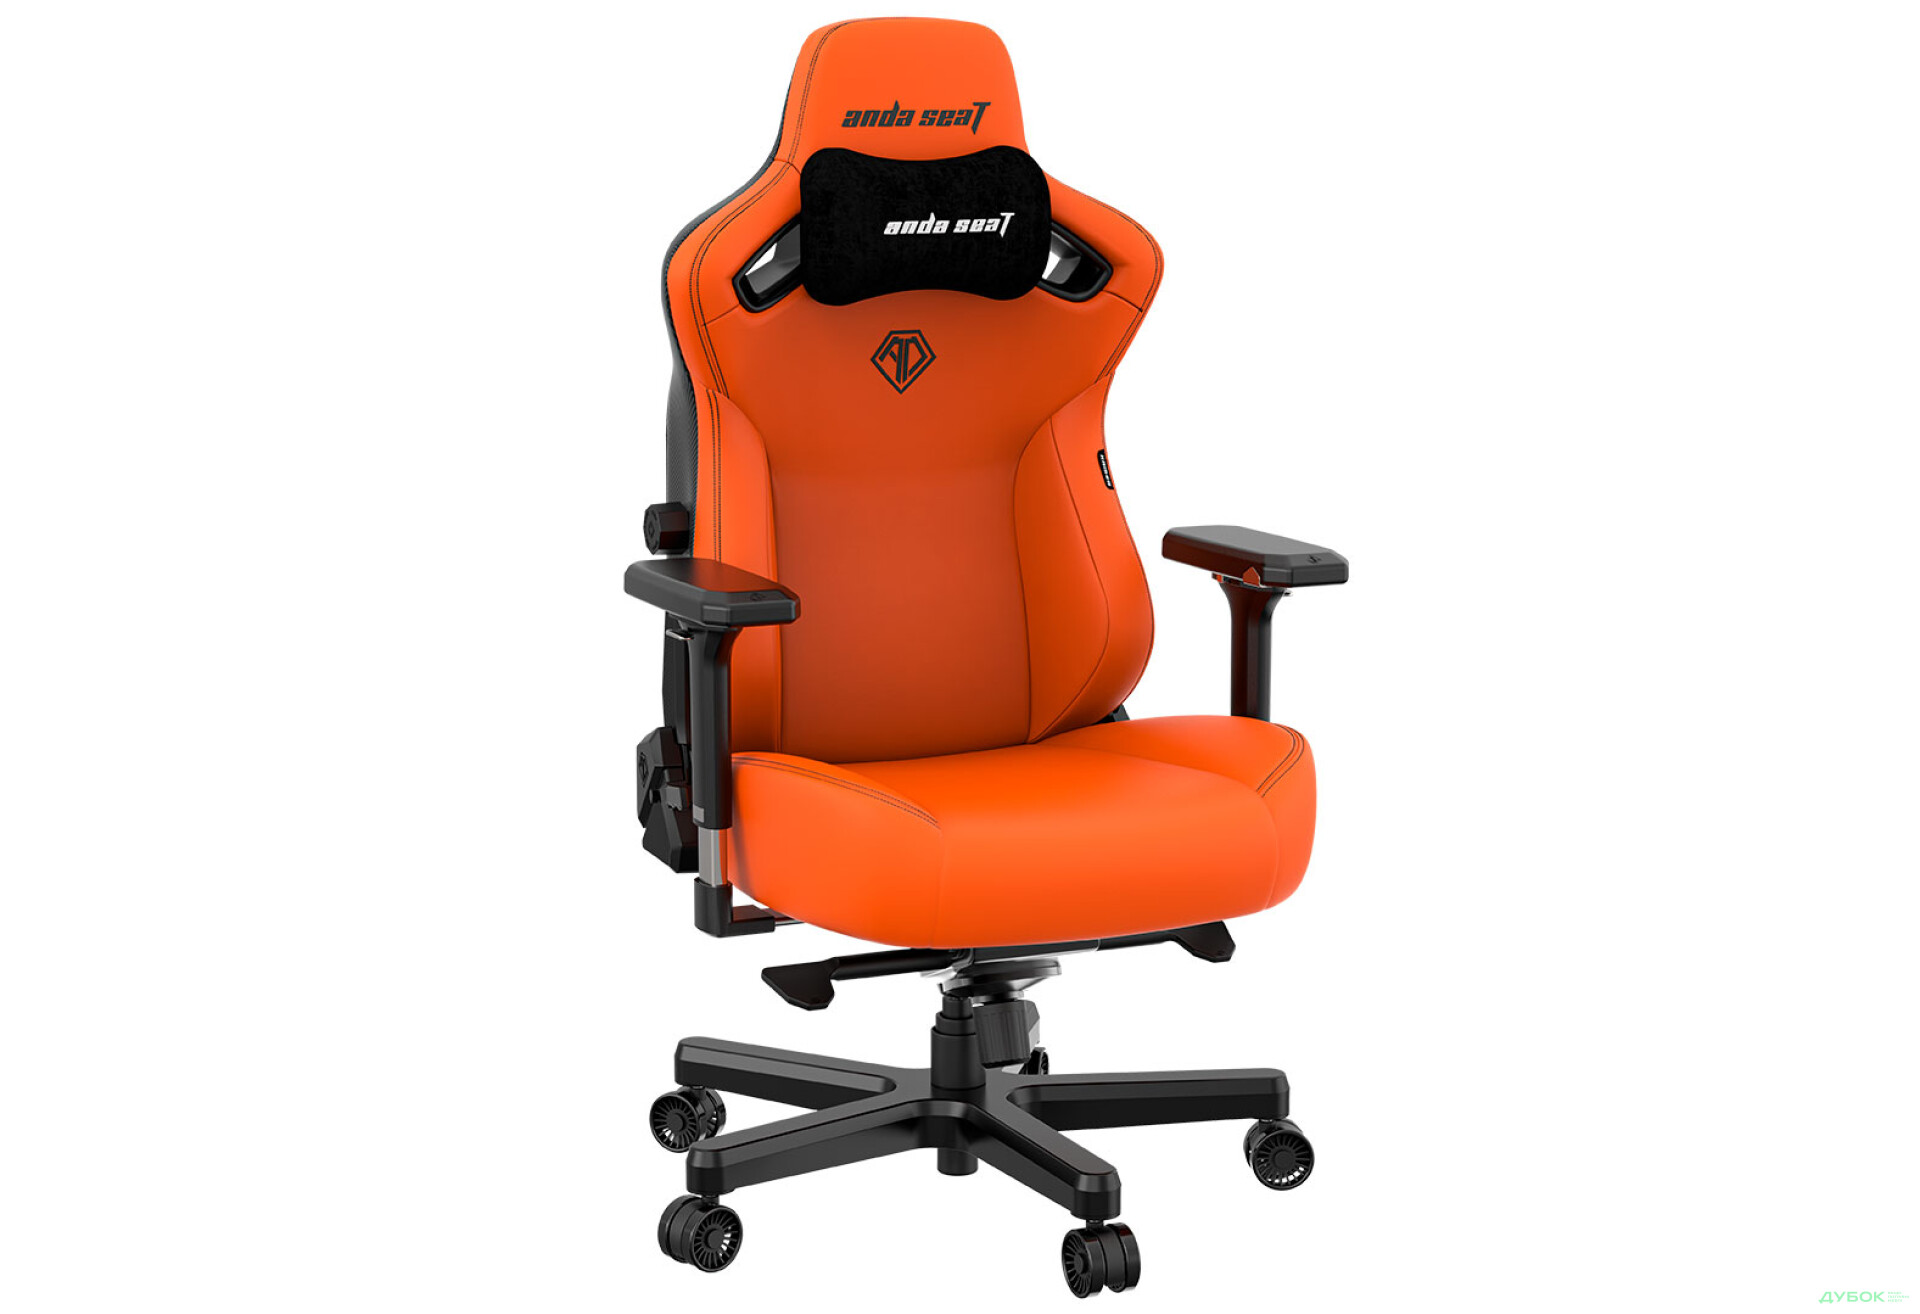 Фото 5 - Компьютерное кресло Anda Seat Kaiser 3 72x57x136 см игровое, оранжевое